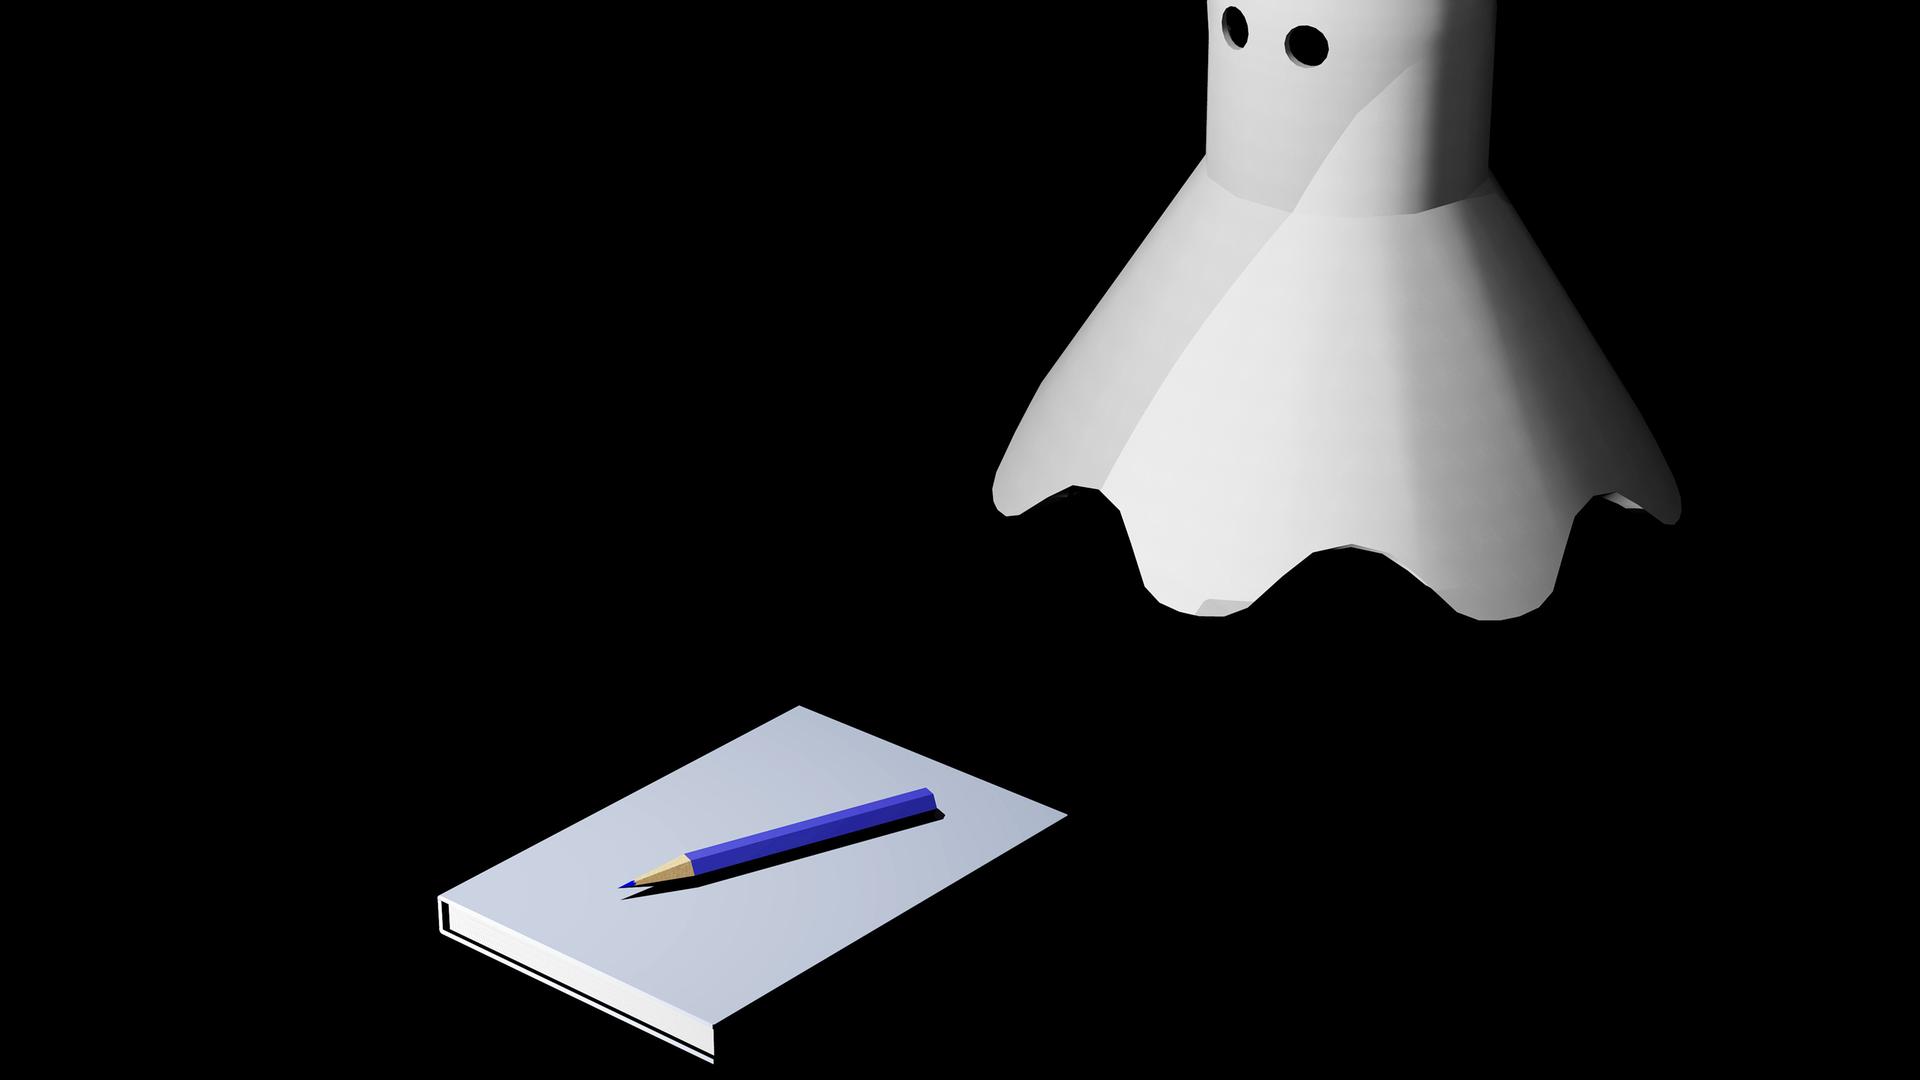 54books: Geghostete Ghostwriter?